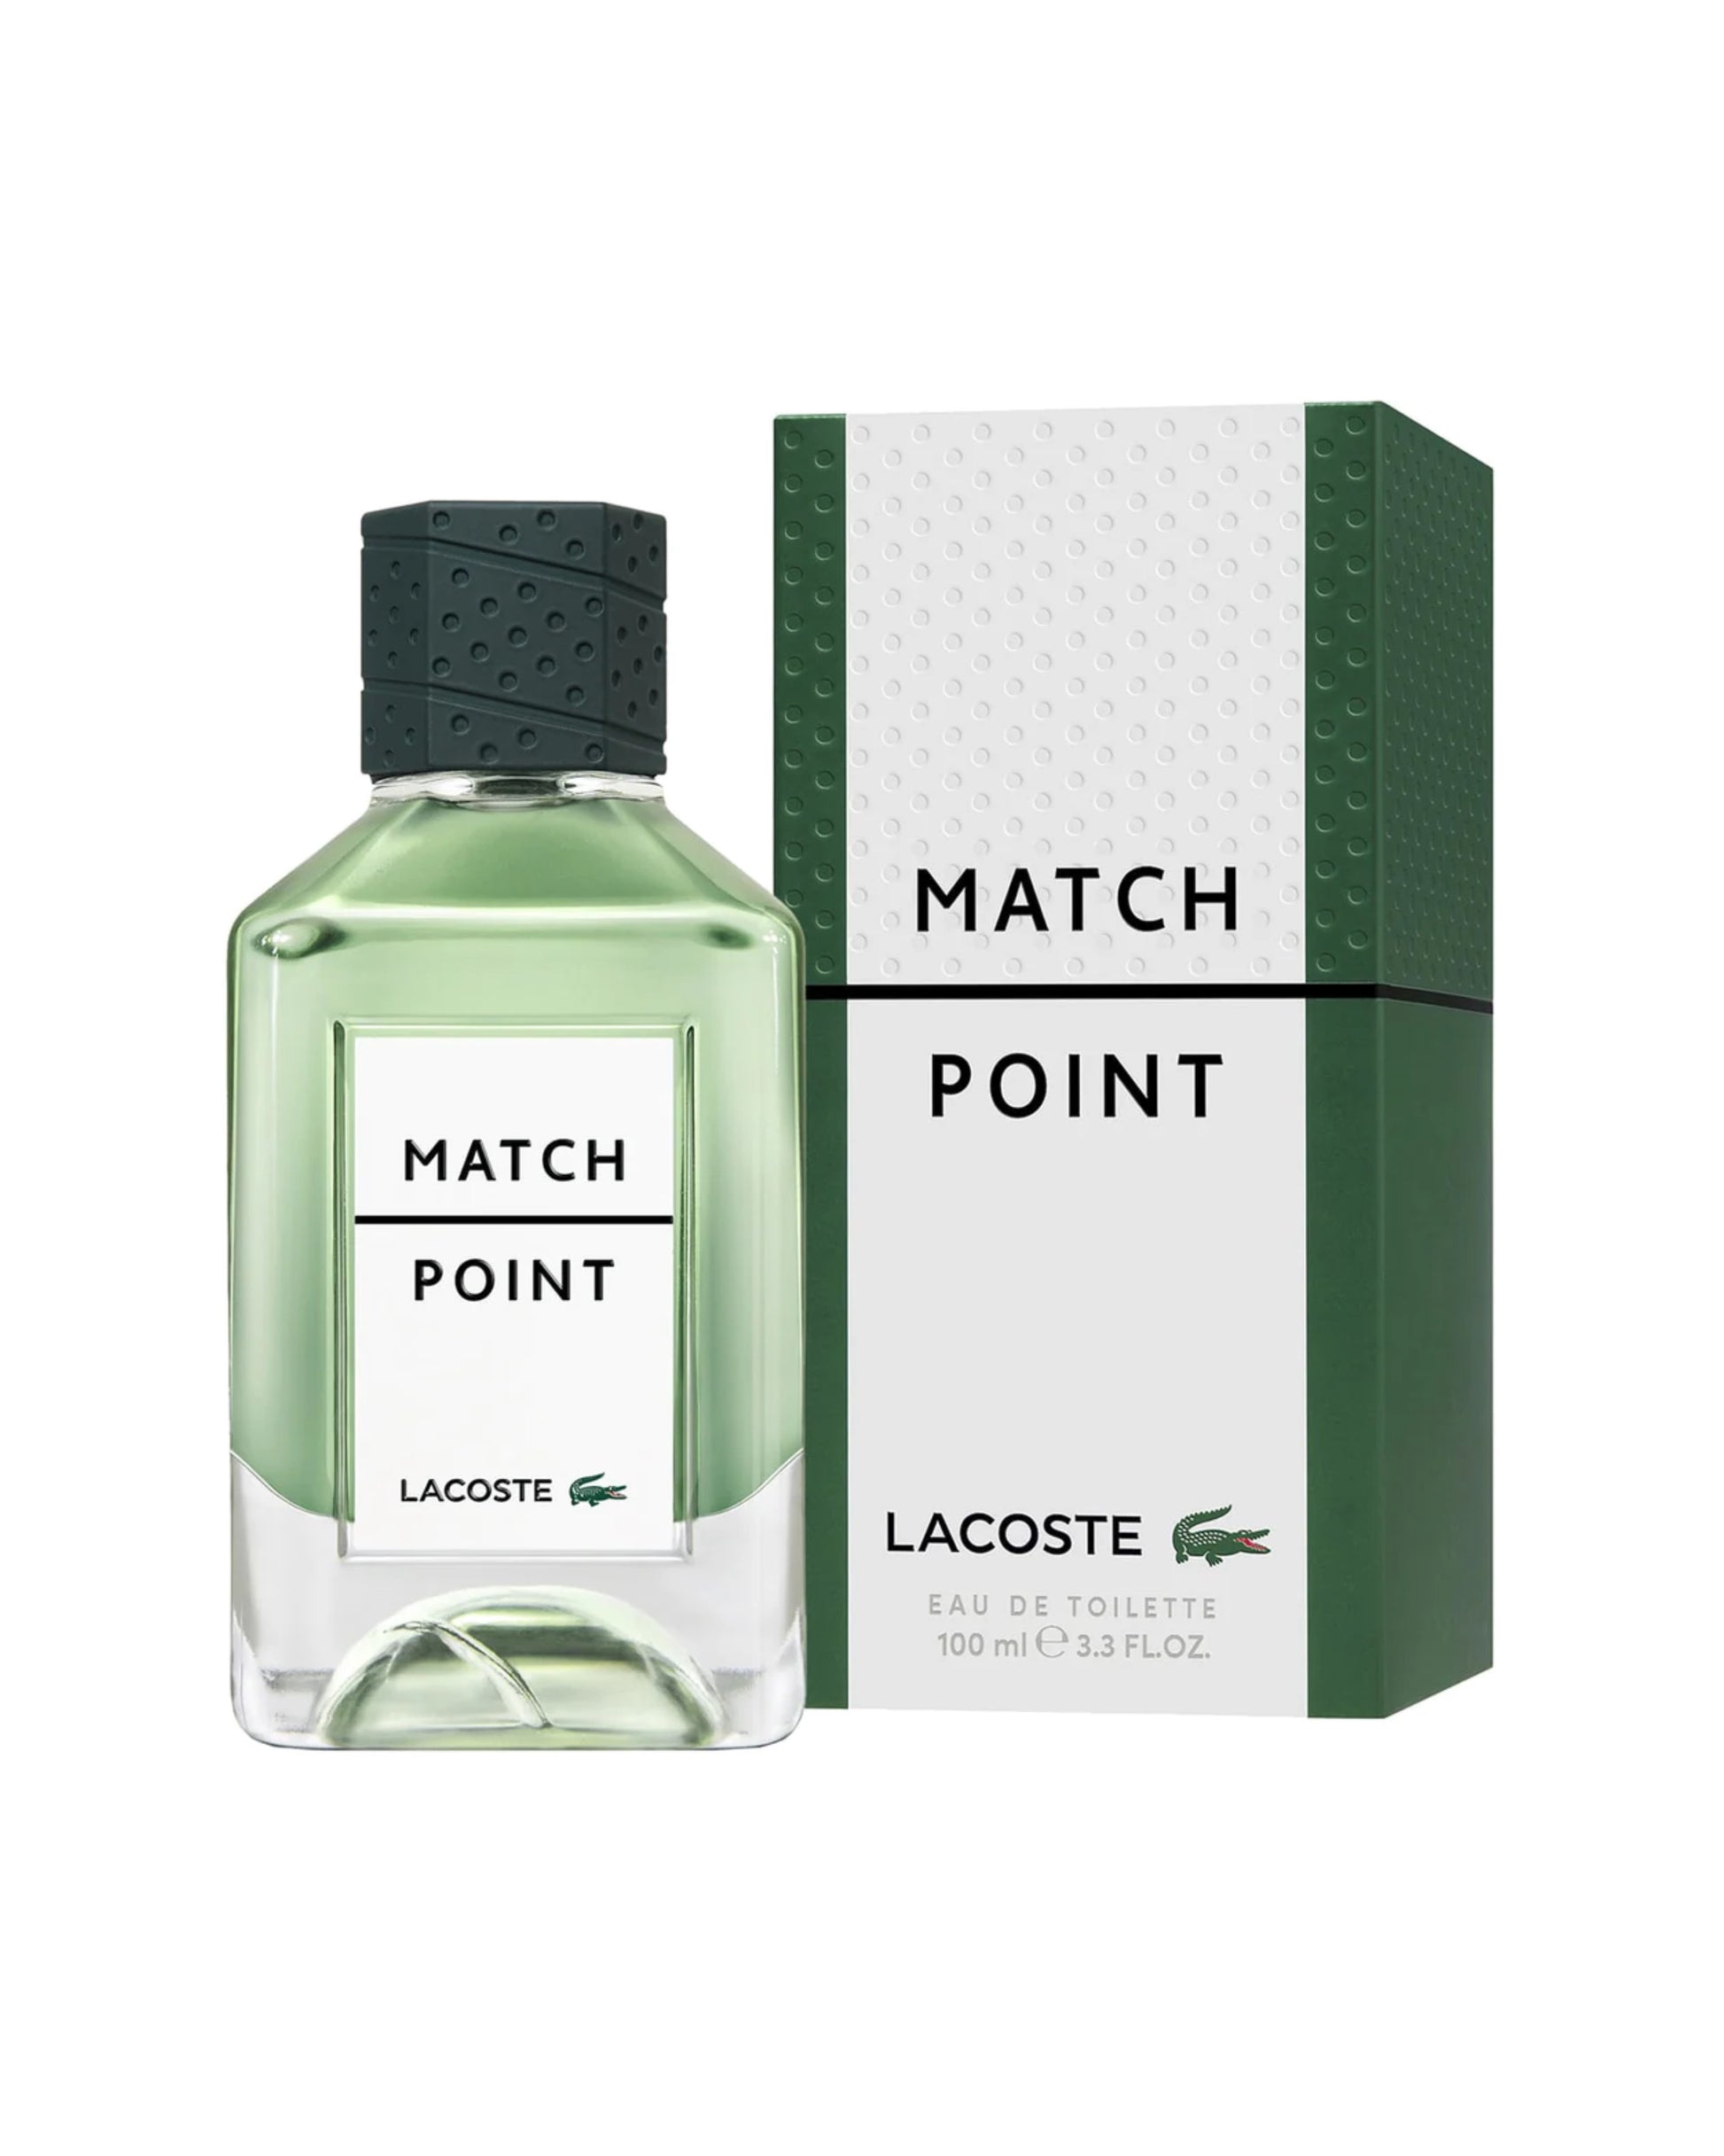 LACOSTE – MATCH POINT Eau de Toilette–foryou–prix de foryou parfumurie en ligne–vente de parfum original au Maroc–prix de foryou parfum